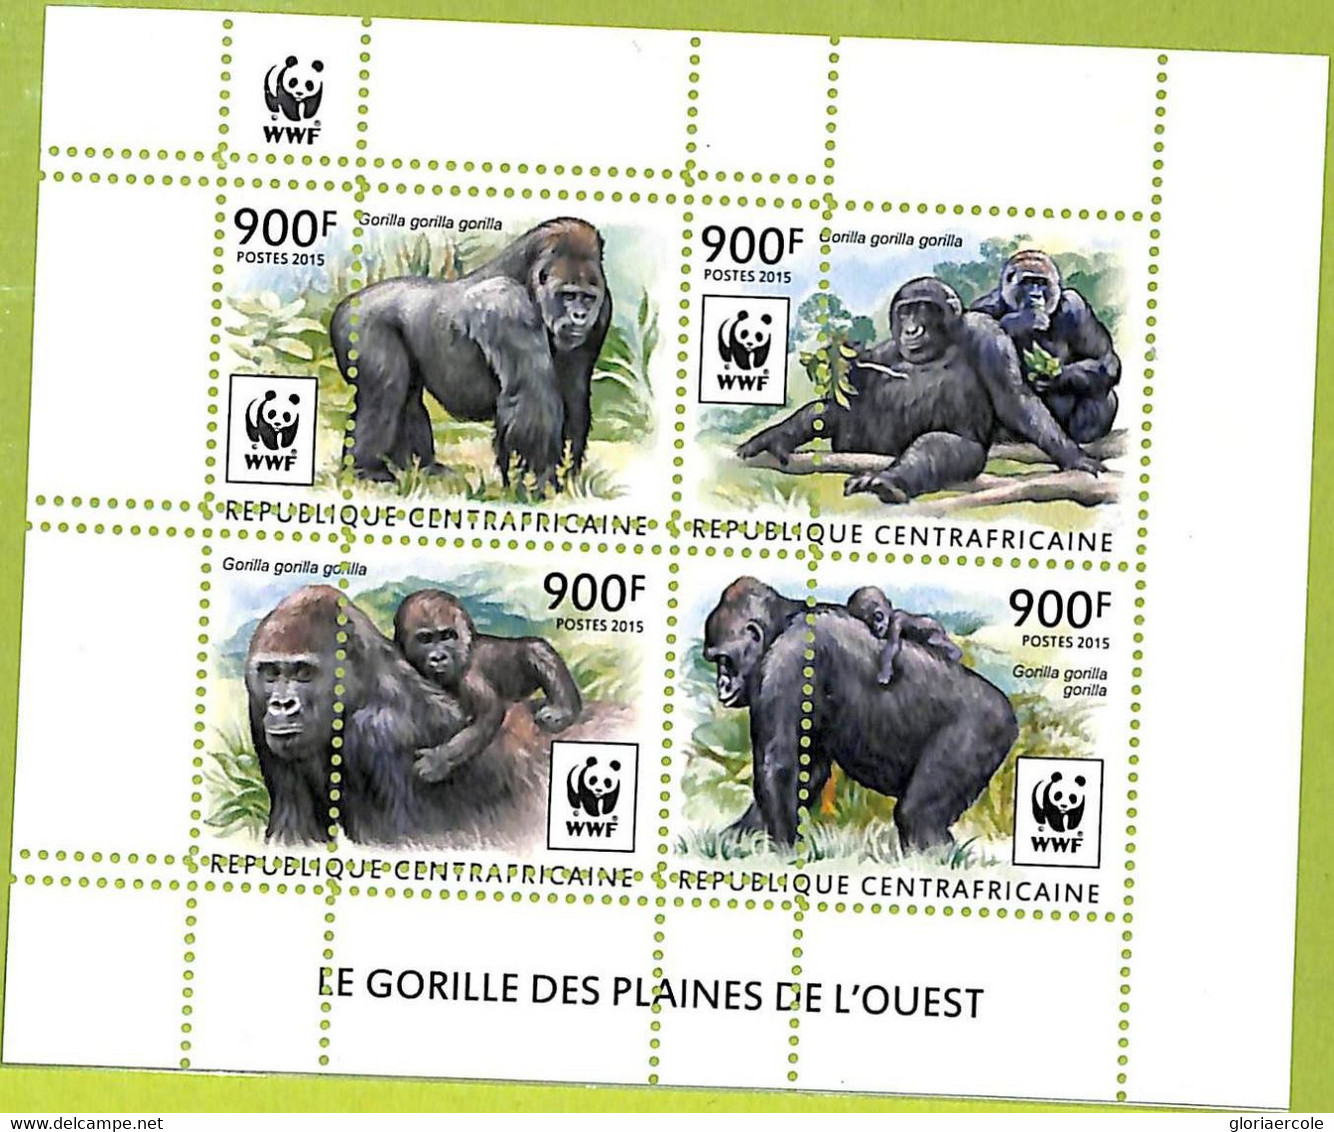 A7581 - CENTRAFRICAINE-ERROR MISPERF -Stamp Sheet -WWF -2015- ANIMALS : GORILLAS - Gorilles